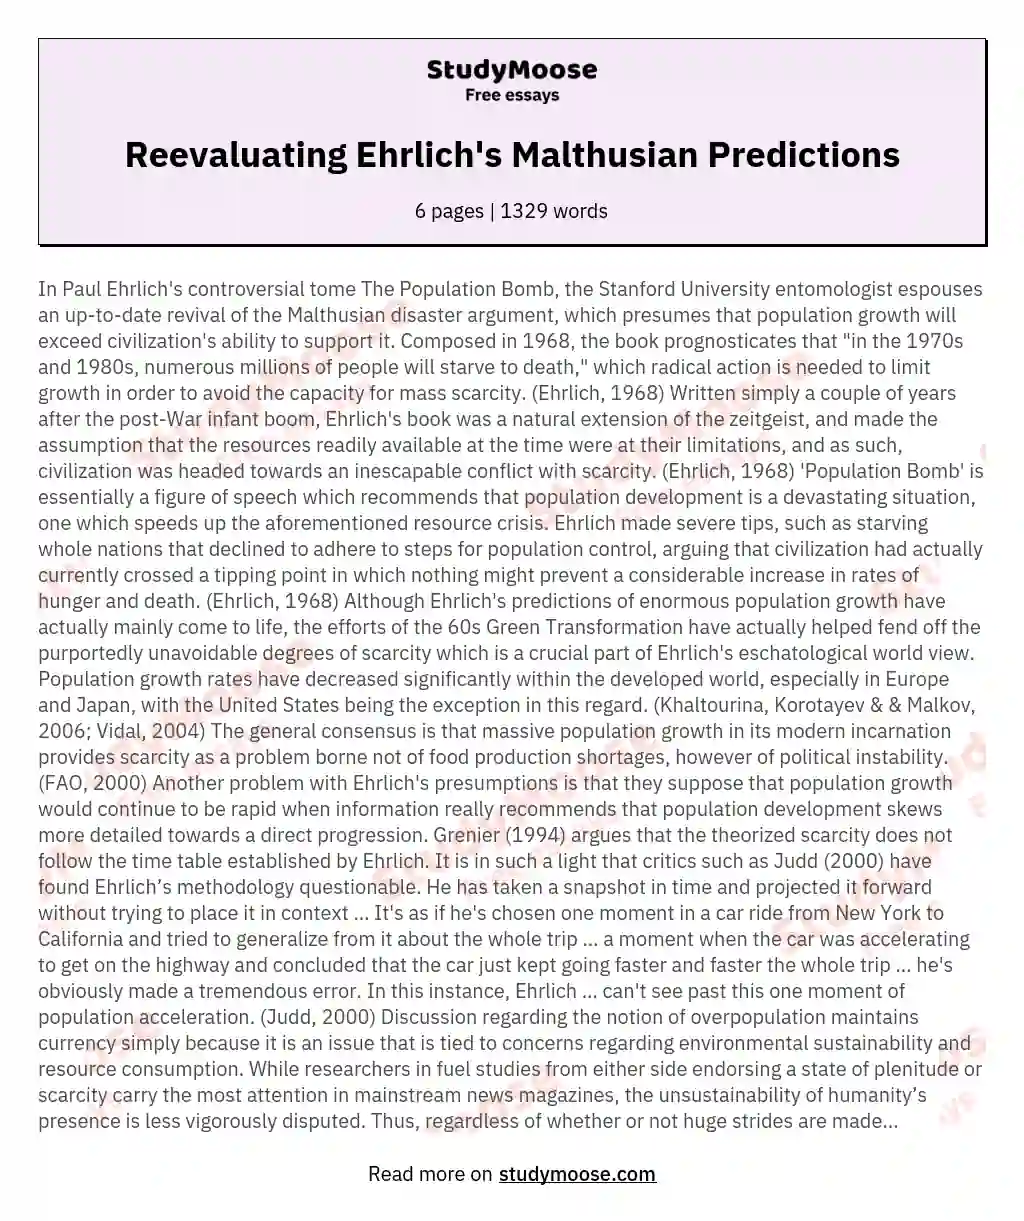 Reevaluating Ehrlich's Malthusian Predictions essay